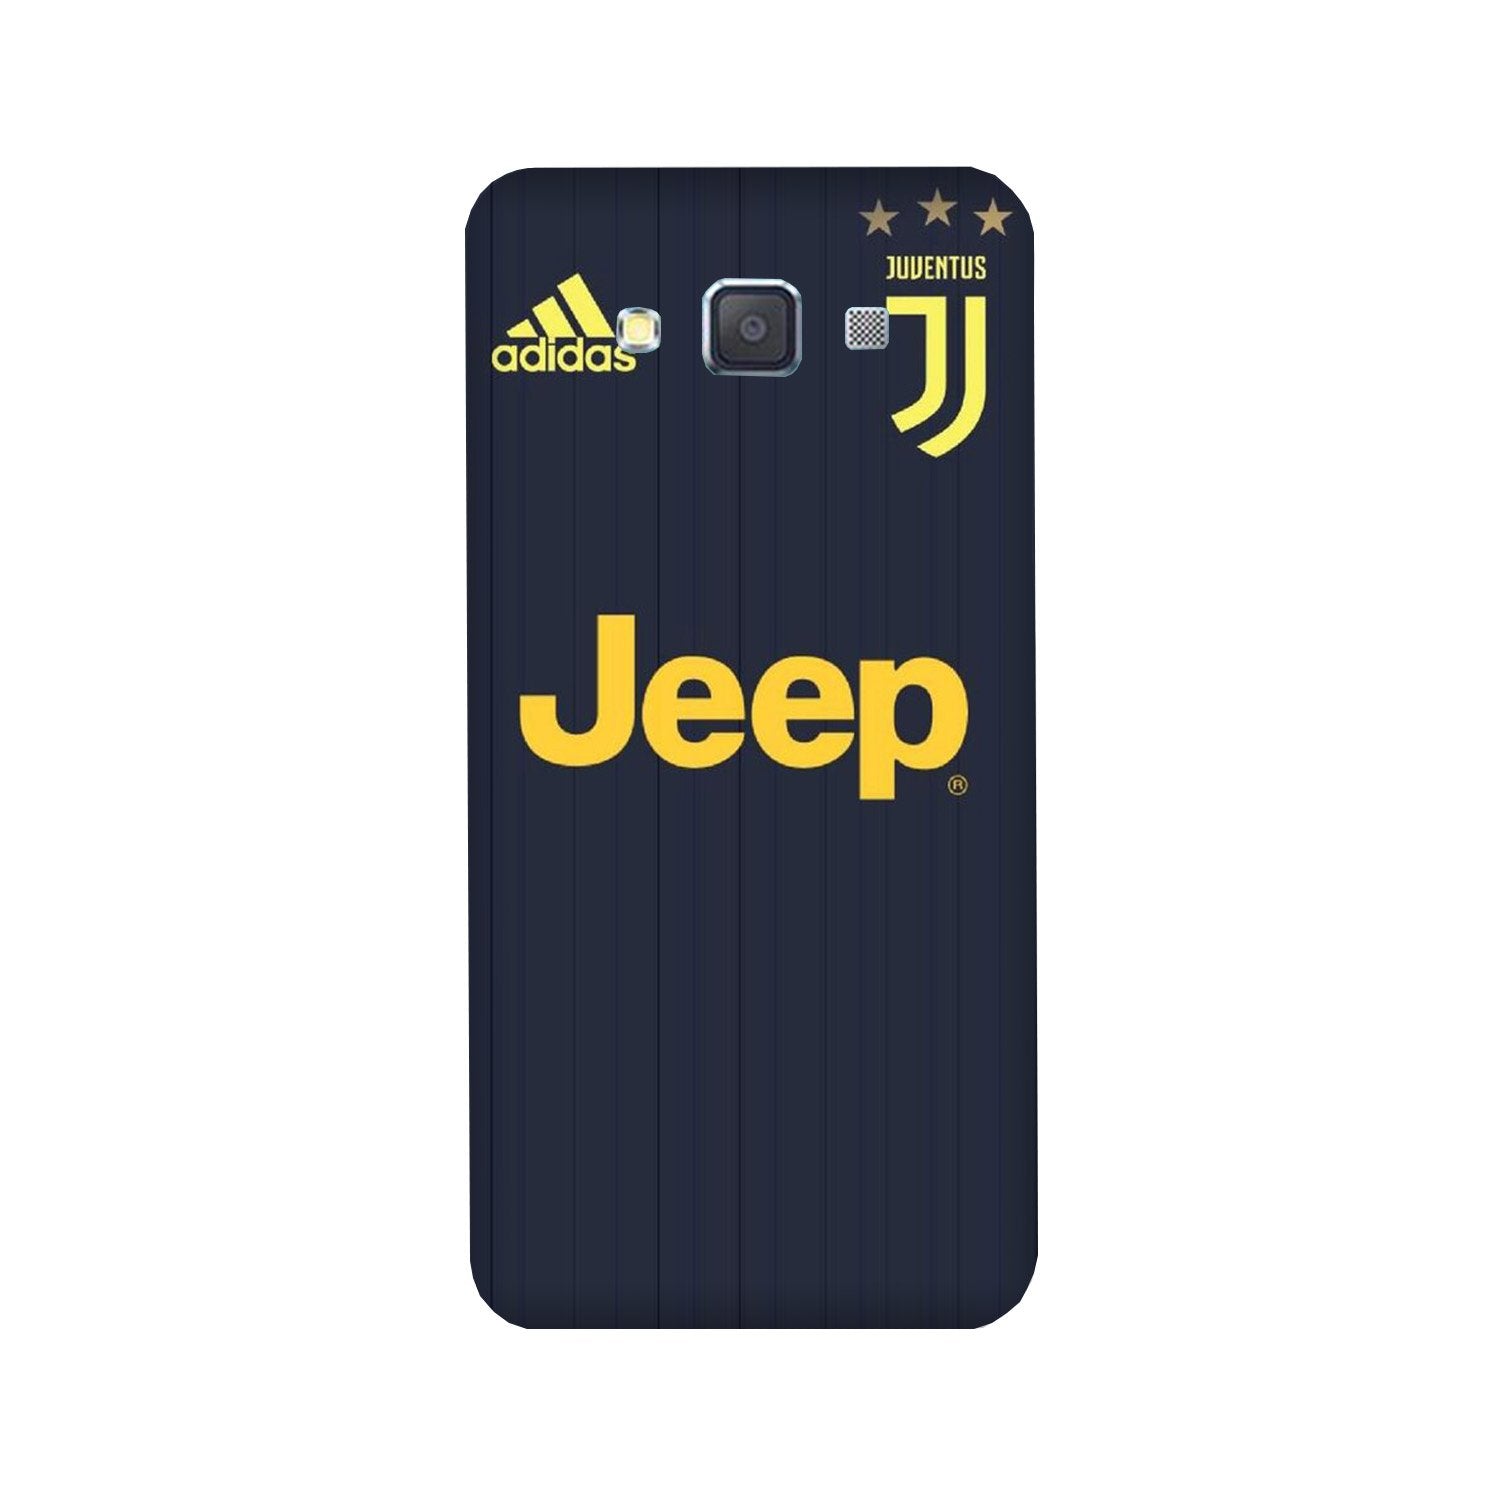 Jeep Juventus Case for Galaxy E7(Design - 161)